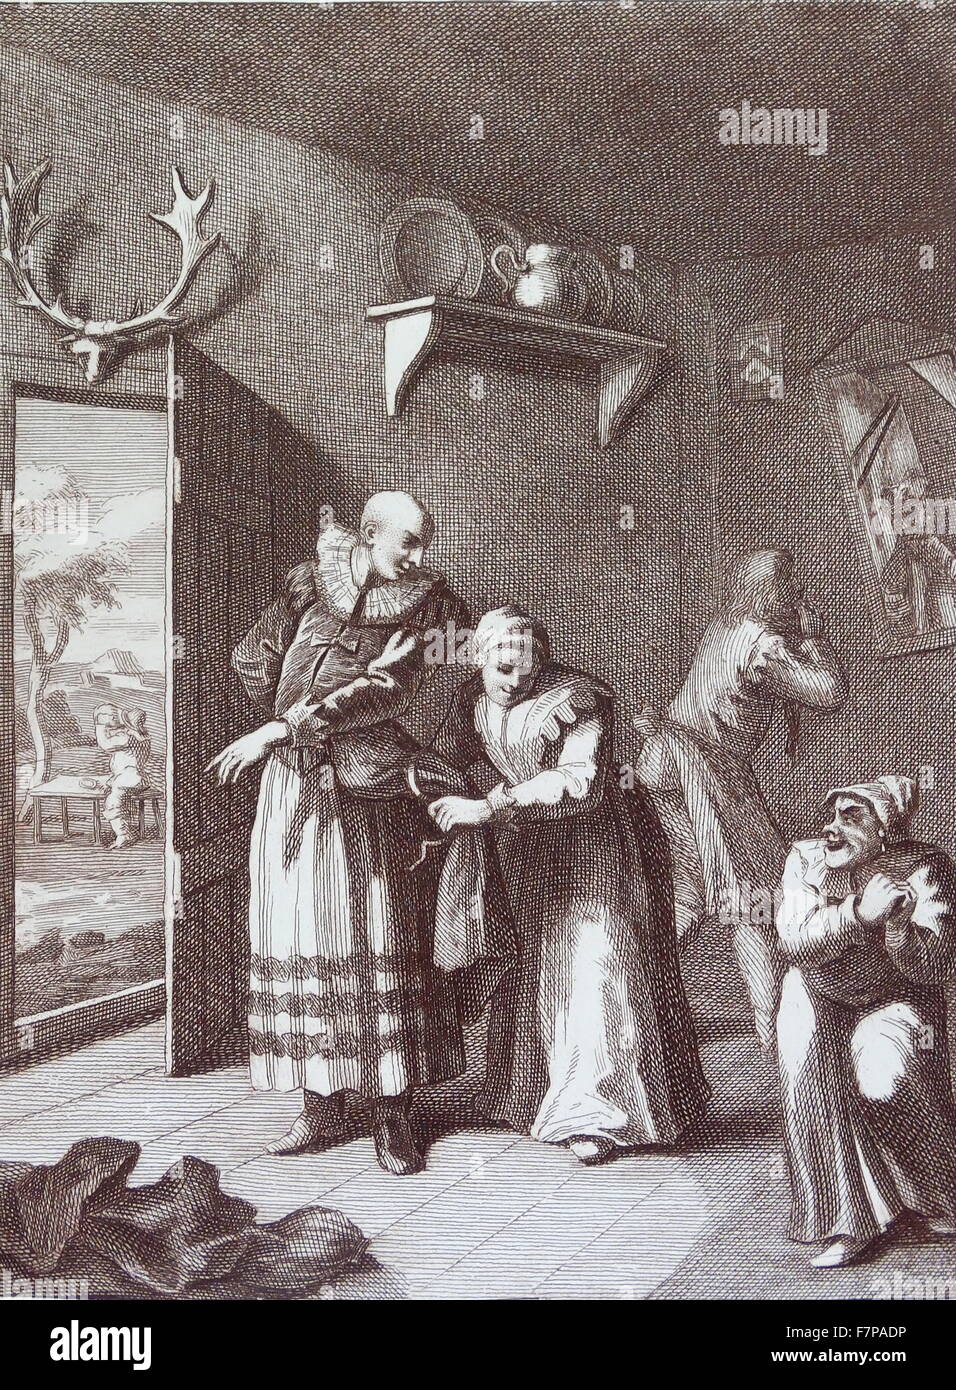 Der Pfarrer und der Barbier verkleidet sich als Don Quichotte mit nach Hause nehmen. 1754 Kupferstich von William Hogarth, 18. Jahrhundert Stockfoto